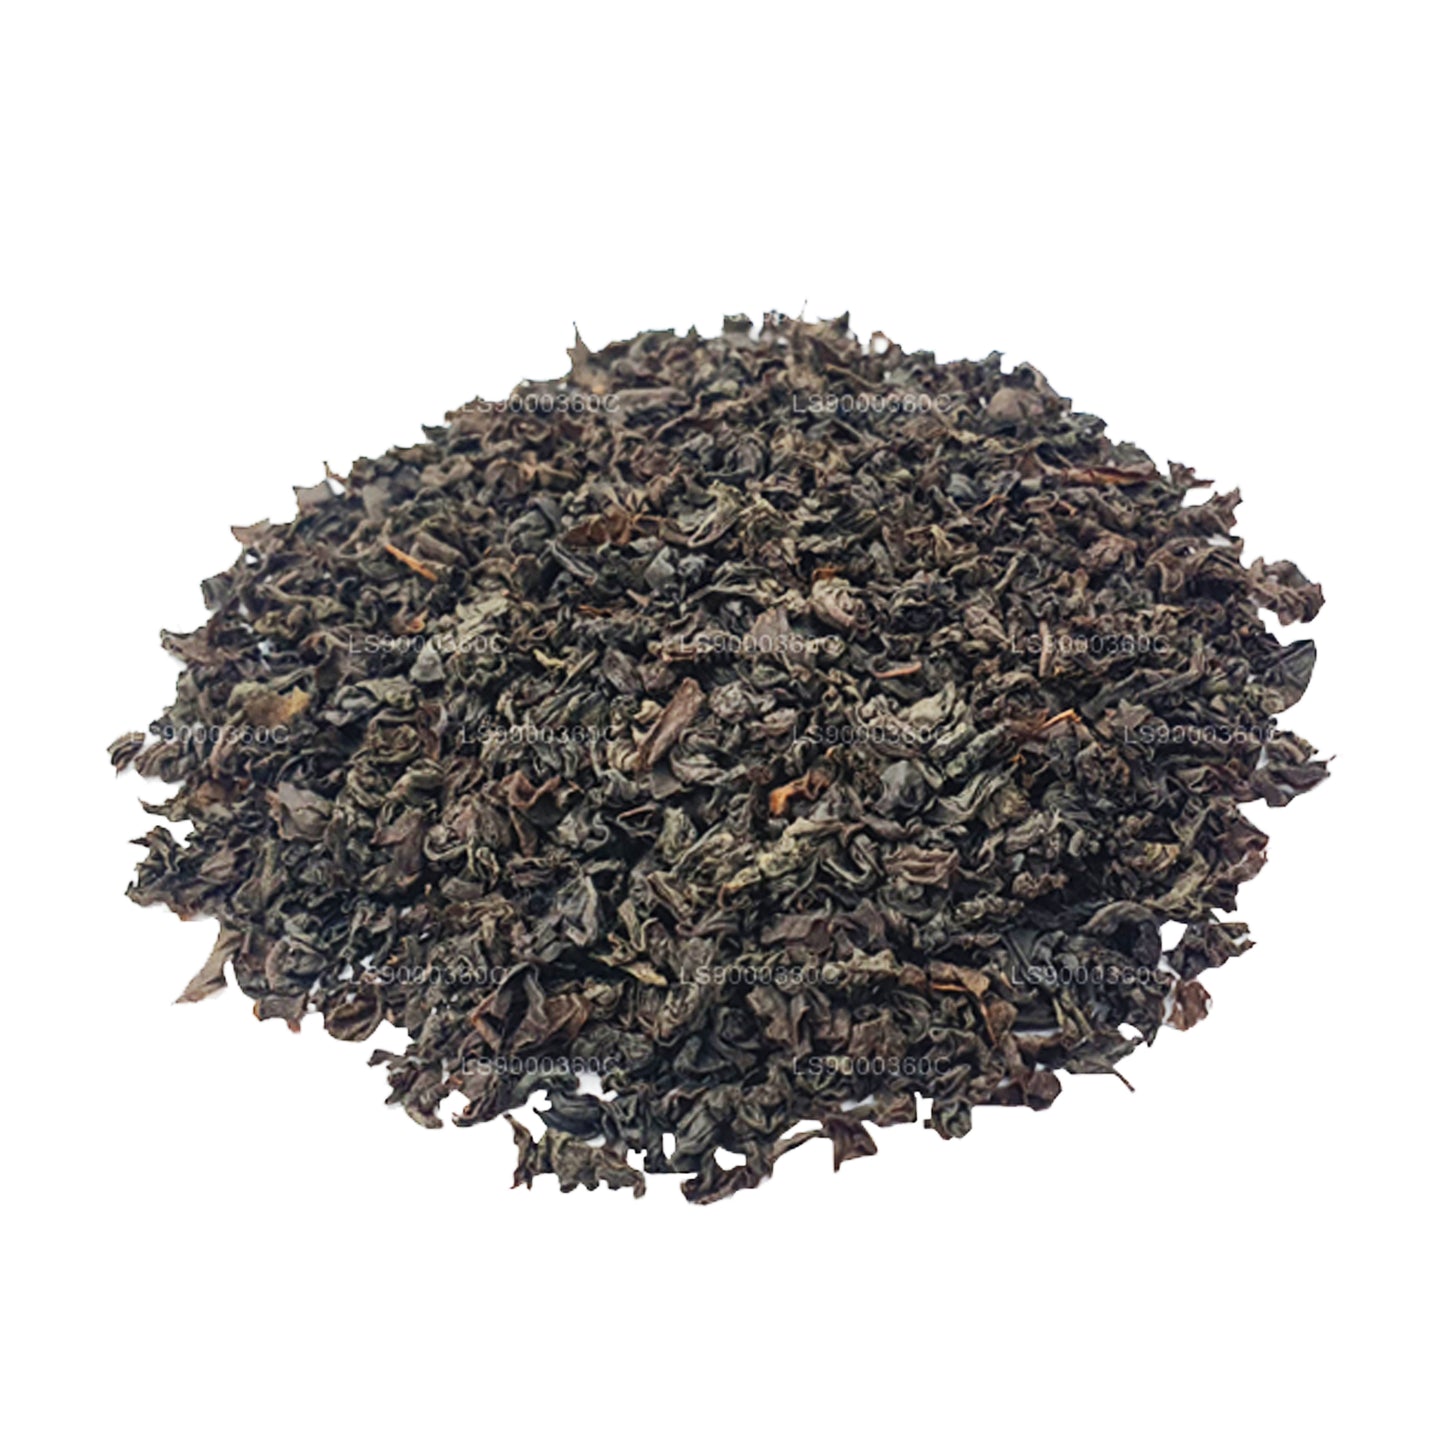 لابورا سينجل إستيت (دومباجاستالاوا) شاي أسود مصنوع من السيليكون بدرجة PEKOE (100 جرام)